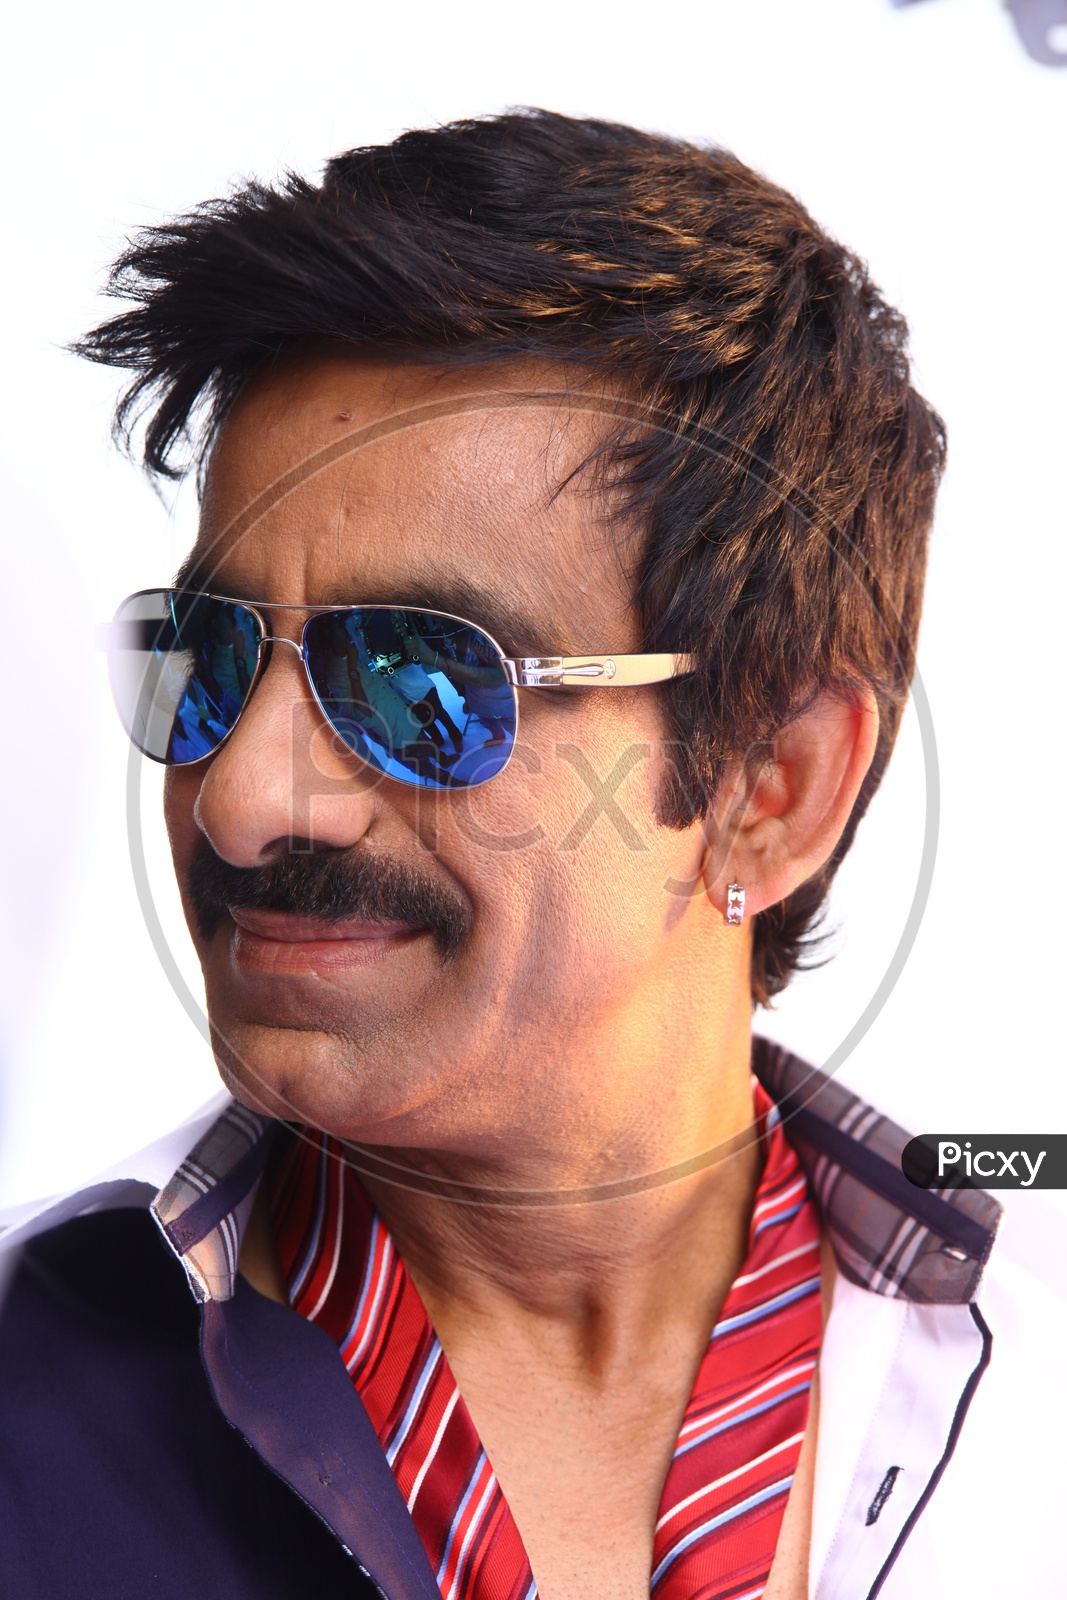 Image of Indian Film Actor Ravi Teja-DV097600-Picxy